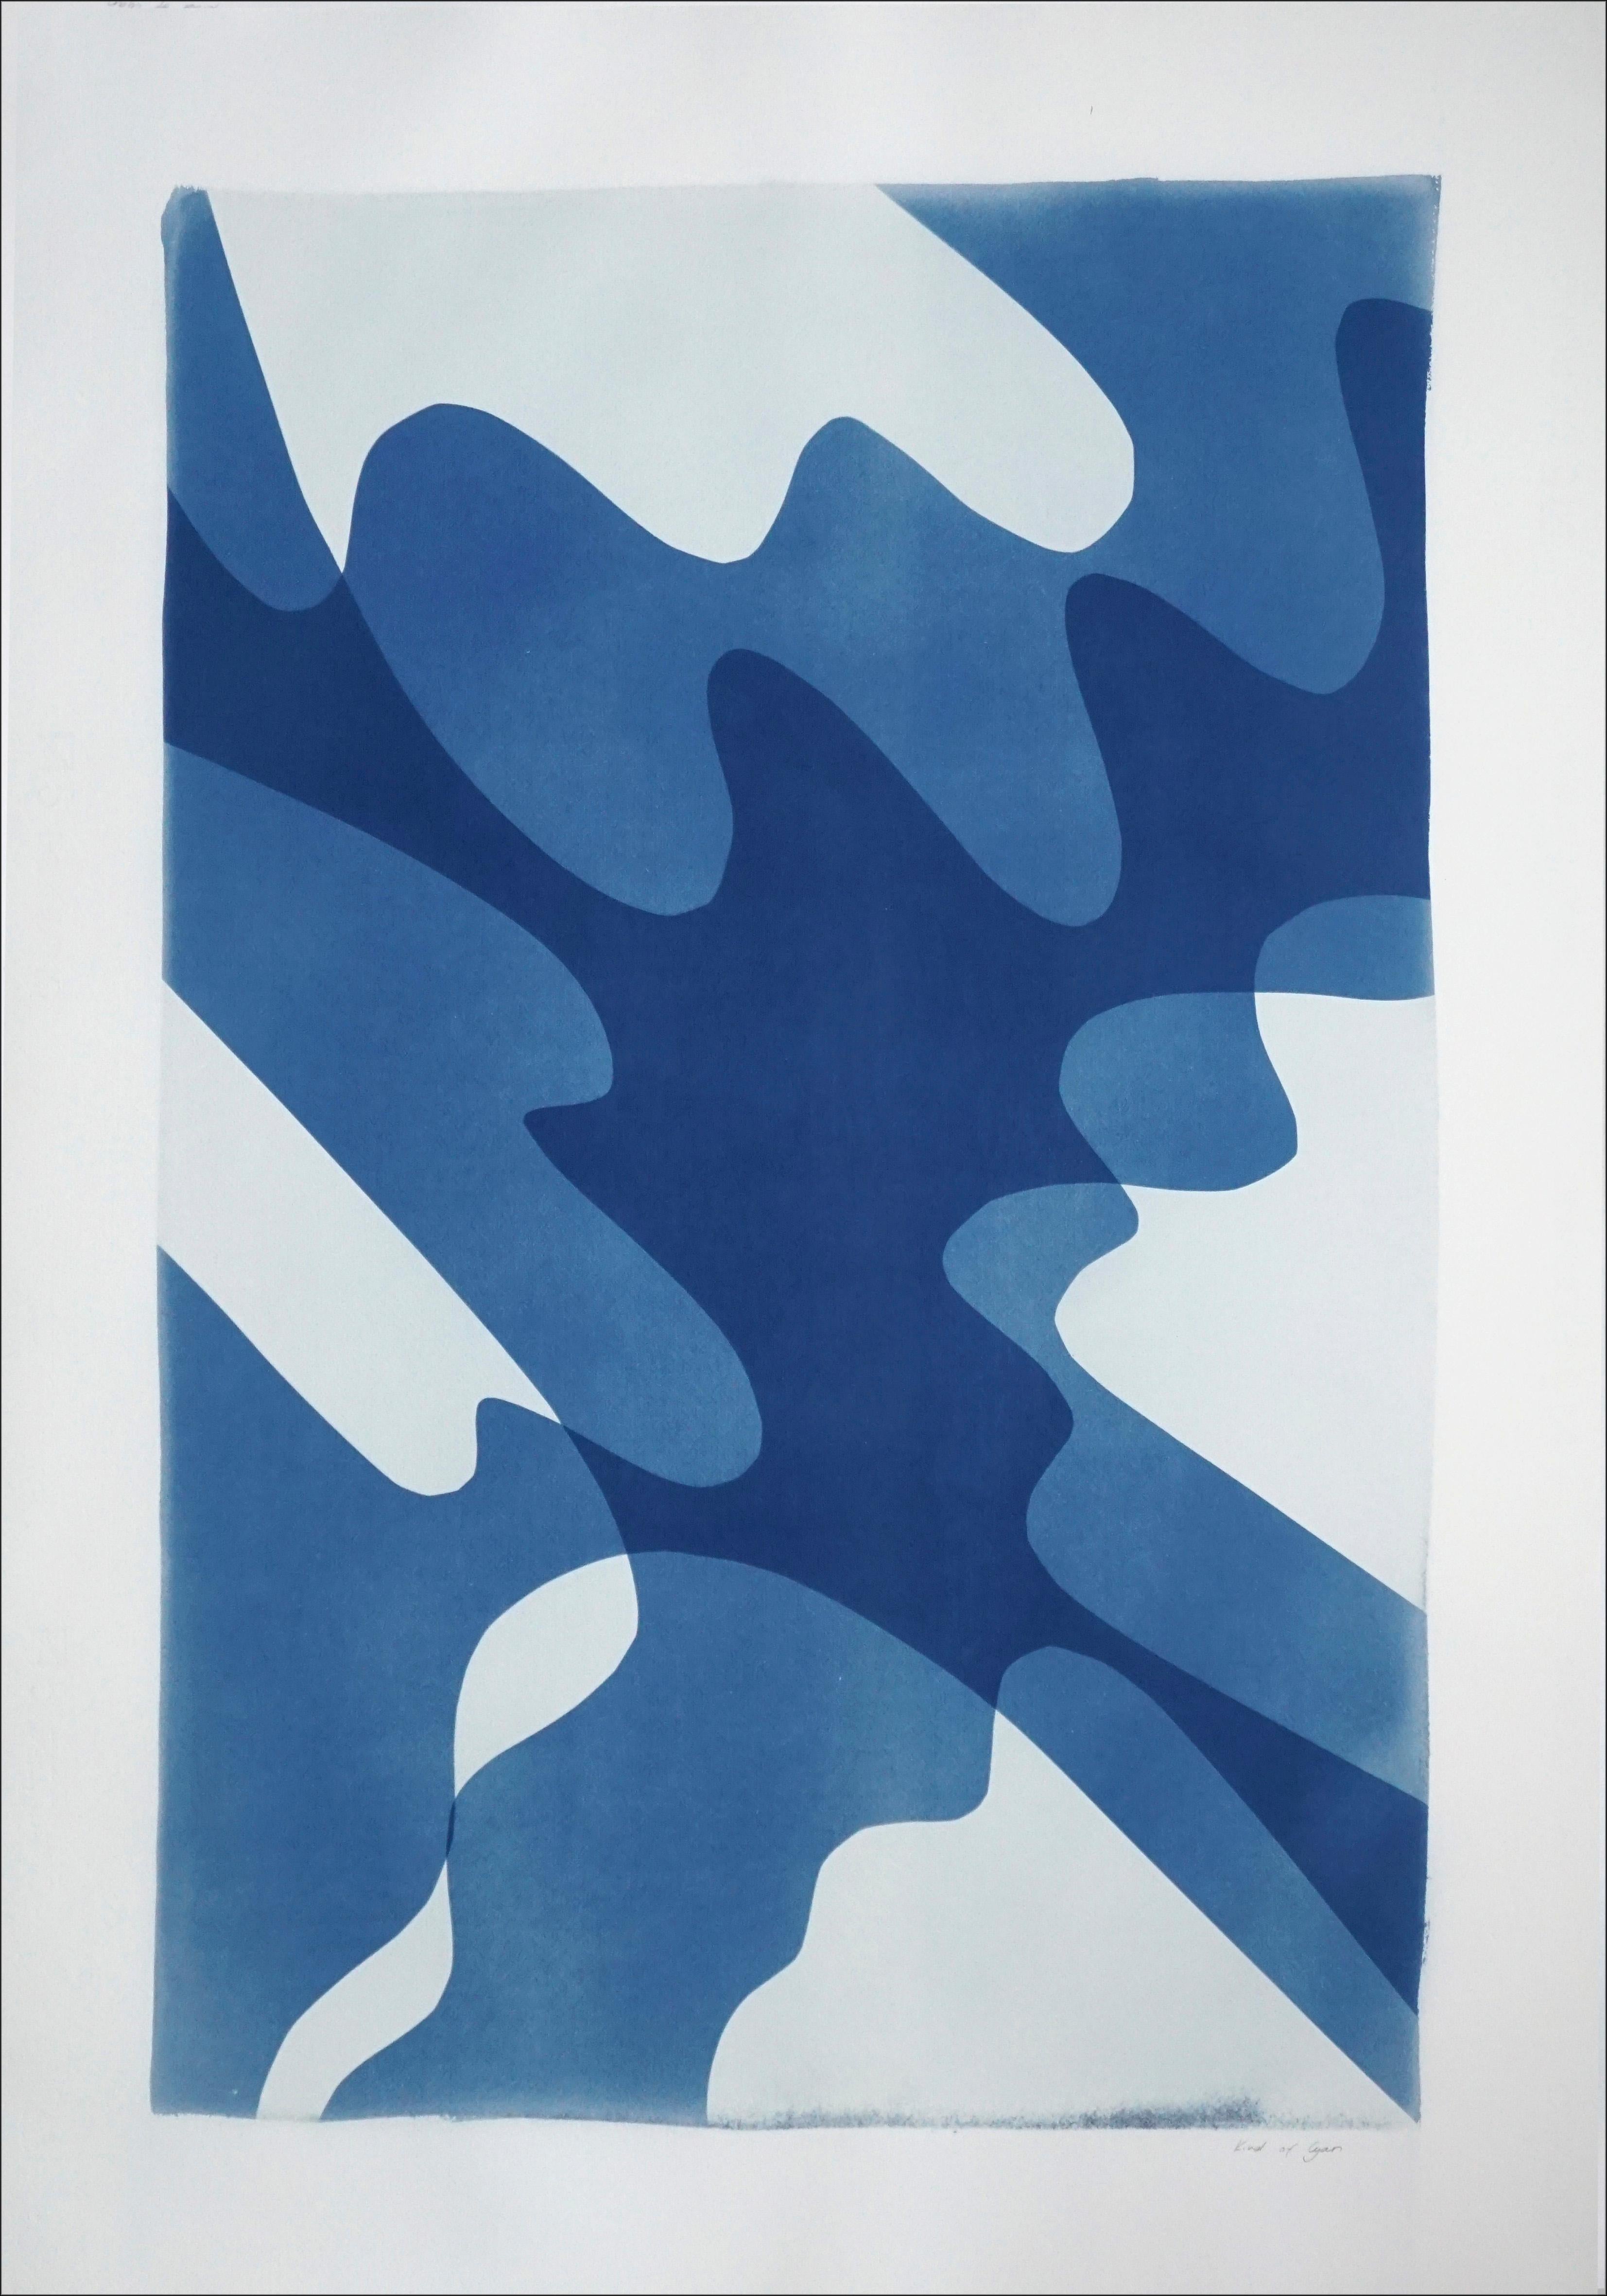 Kind of Cyan Abstract Print – Shaky Shadows, handgefertigte Monotypie minimalistischer abstrakter Formen und Lagen in Blau